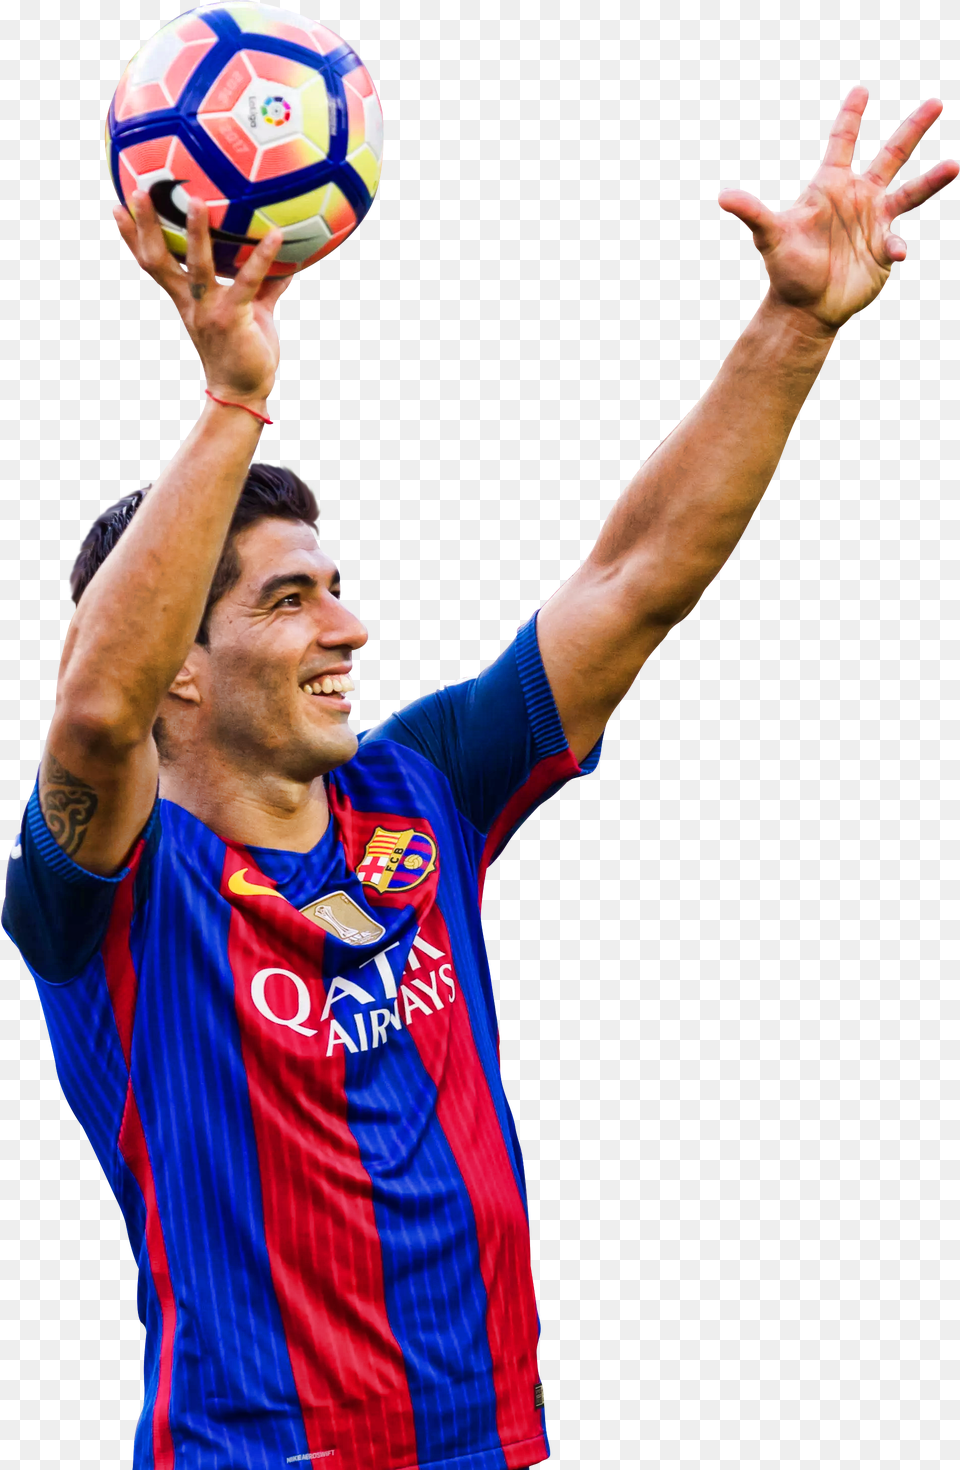 Transparent Luis Suarez Luis Surez, Sport, Soccer, Soccer Ball, Hand Free Png Download